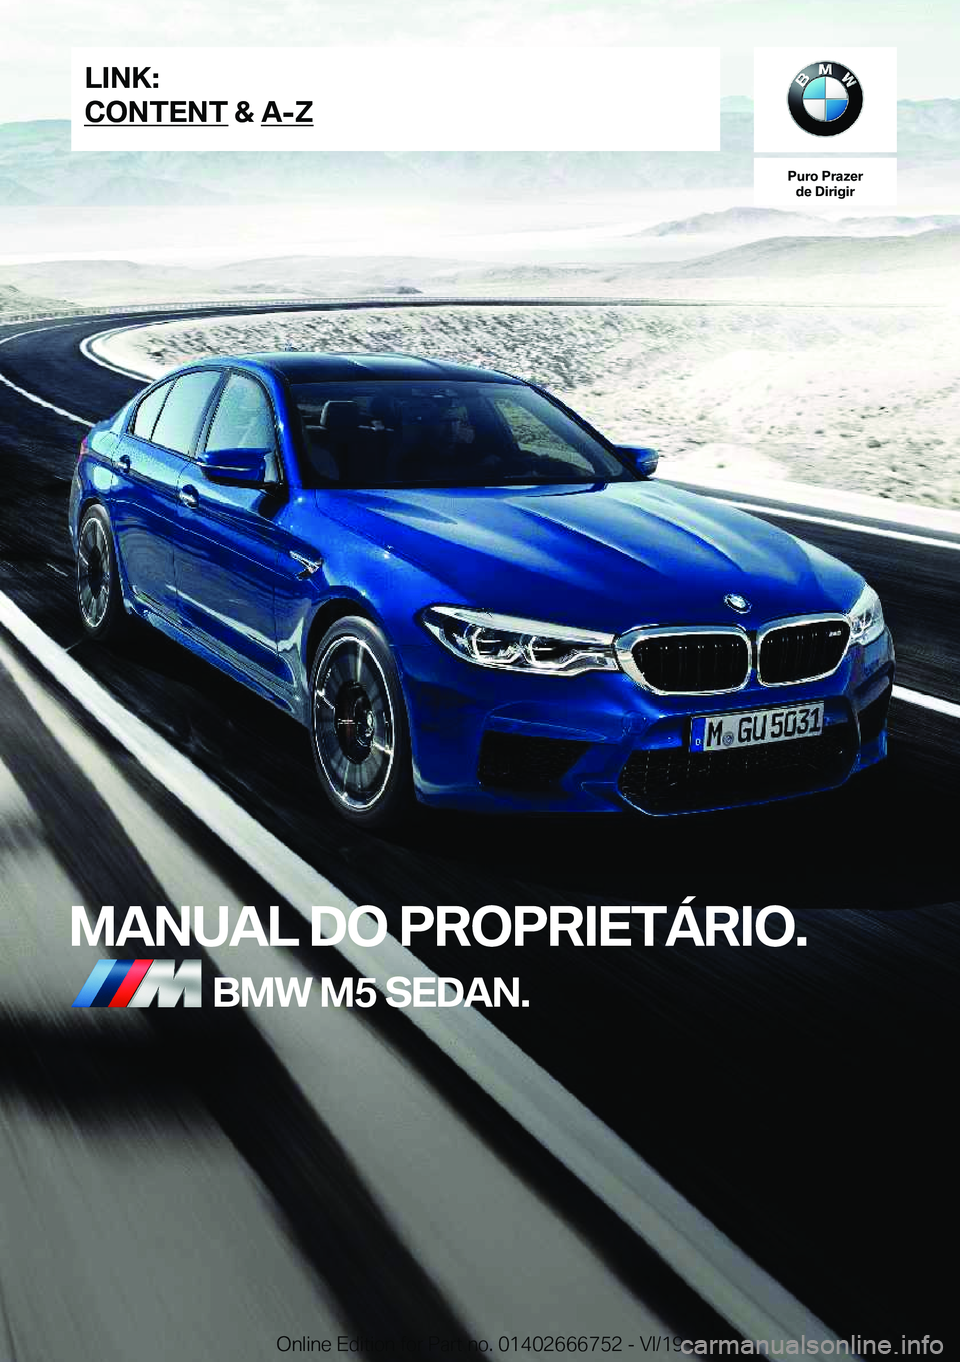 BMW M5 2020  Manual do condutor (in Portuguese) �P�u�r�o��P�r�a�z�e�r�d�e��D�i�r�i�g�i�r
�M�A�N�U�A�L��D�O��P�R�O�P�R�I�E�T�Á�R�I�O�.�B�M�W��M�5��S�E�D�A�N�.�L�I�N�K�:
�C�O�N�T�E�N�T��&��A�-�Z�O�n�l�i�n�e��E�d�i�t�i�o�n��f�o�r��P�a�r�t�